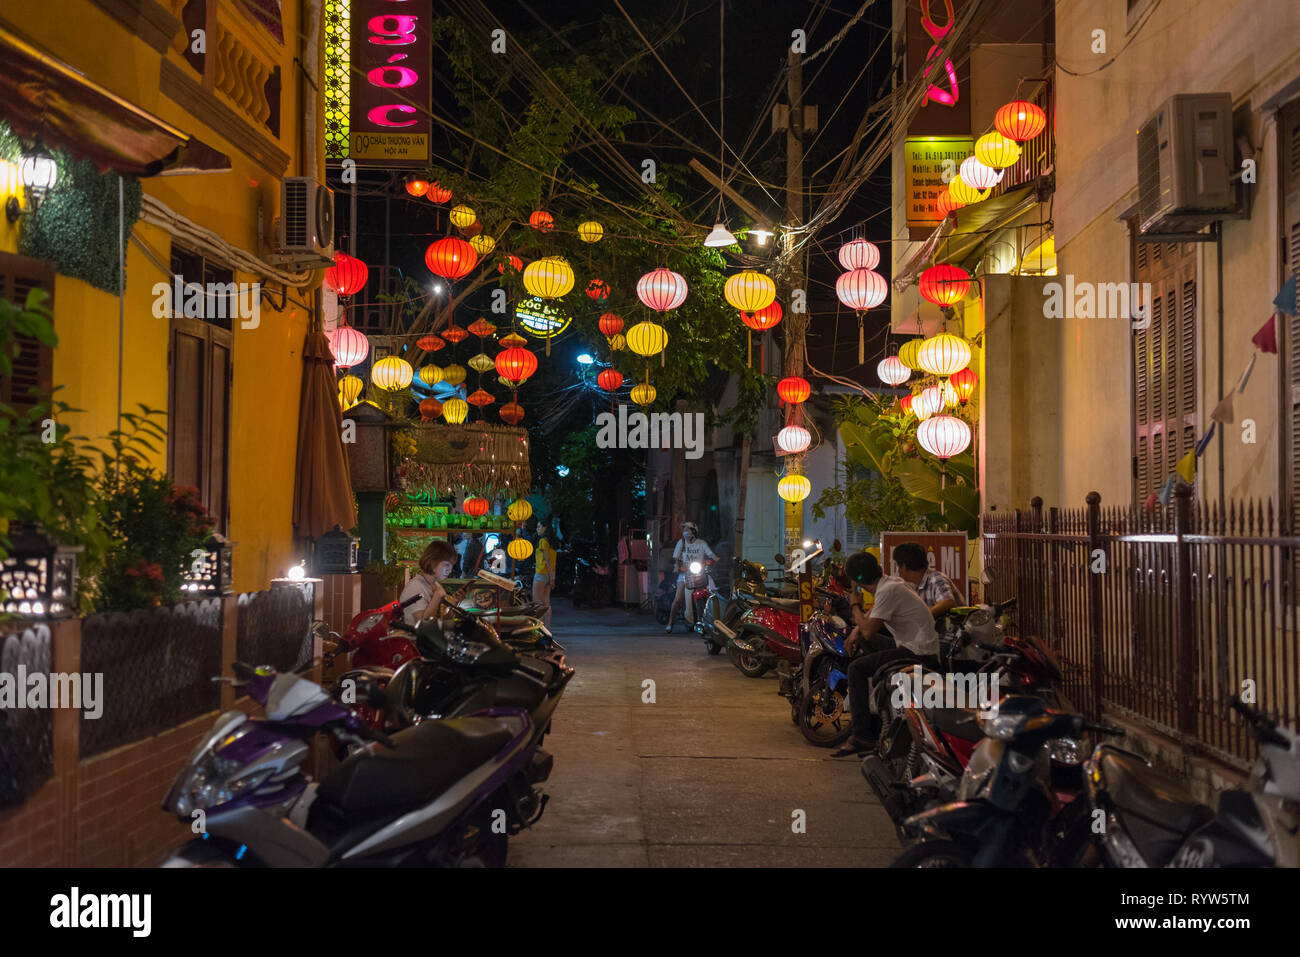 Hoi An, Vietnam - Noviembre 13, 2018: una noche backstreet están decoradas con coloridos faroles de papel con motos aparcadas y a varias personas. Foto de stock